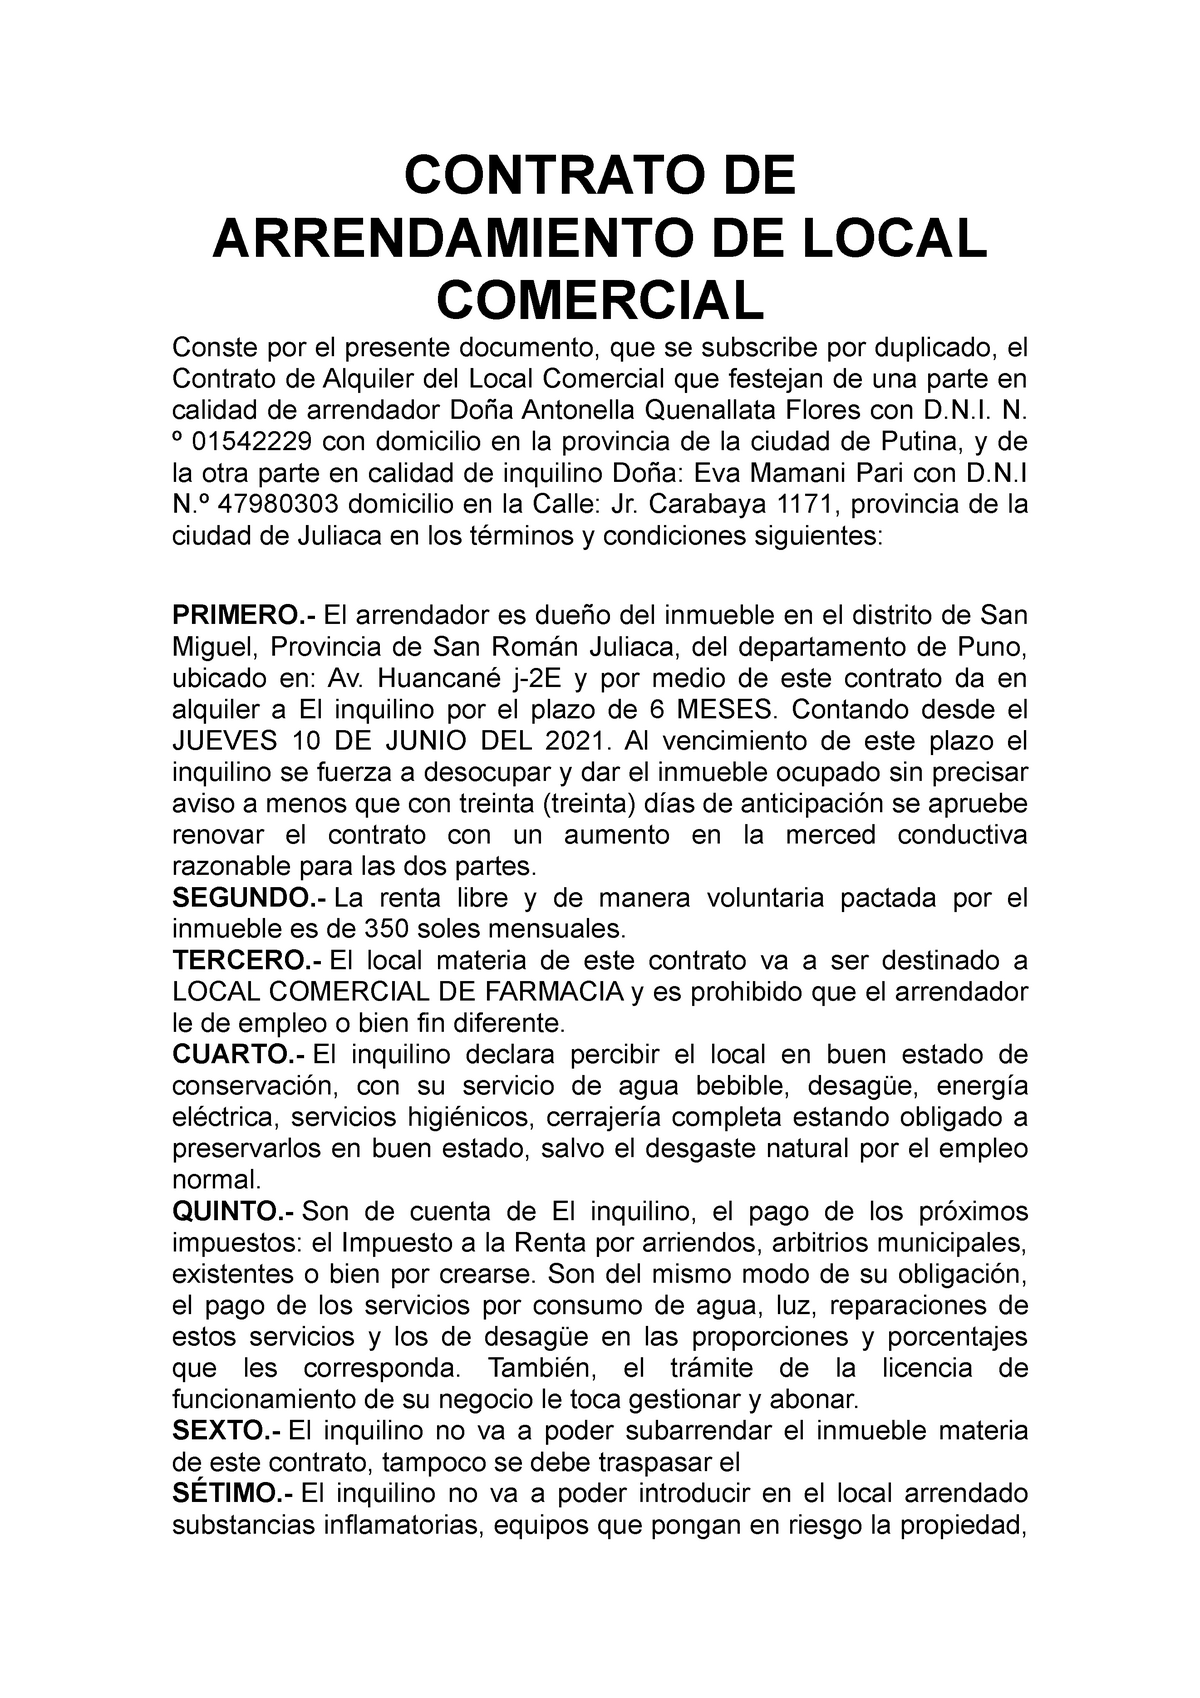 Modelo de contrato de alquiler de local simple - CONTRATO DE ARRENDAMIENTO  DE LOCAL COMERCIAL Conste - Studocu